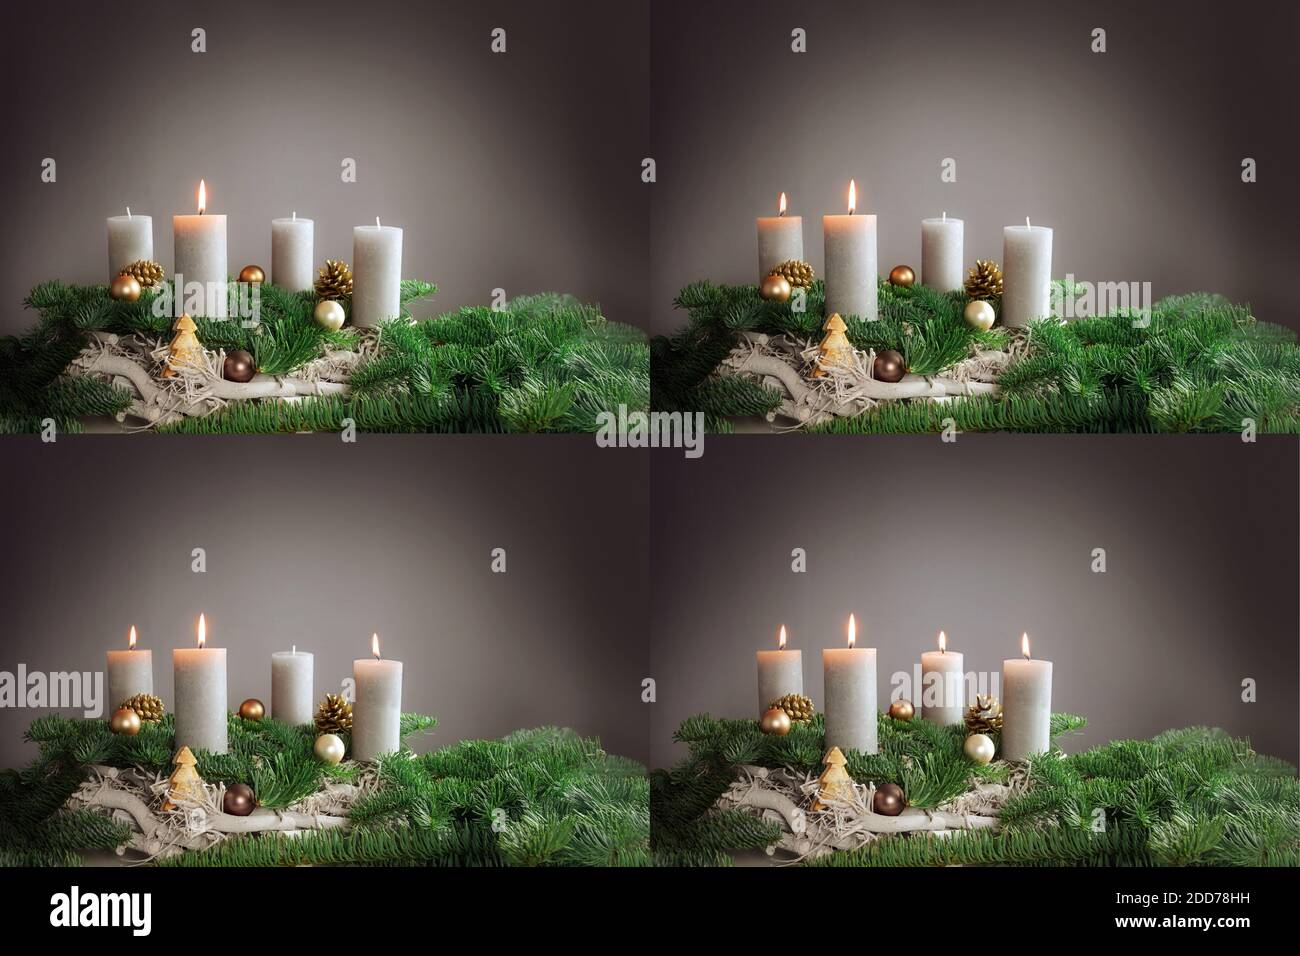 Quattro immagini dal 1° al 4° avvento con arrangiamenti festosi di candele brucianti, rami di abete e decorazione di Natale, spazio di copia, fuoco selezionato, na Foto Stock